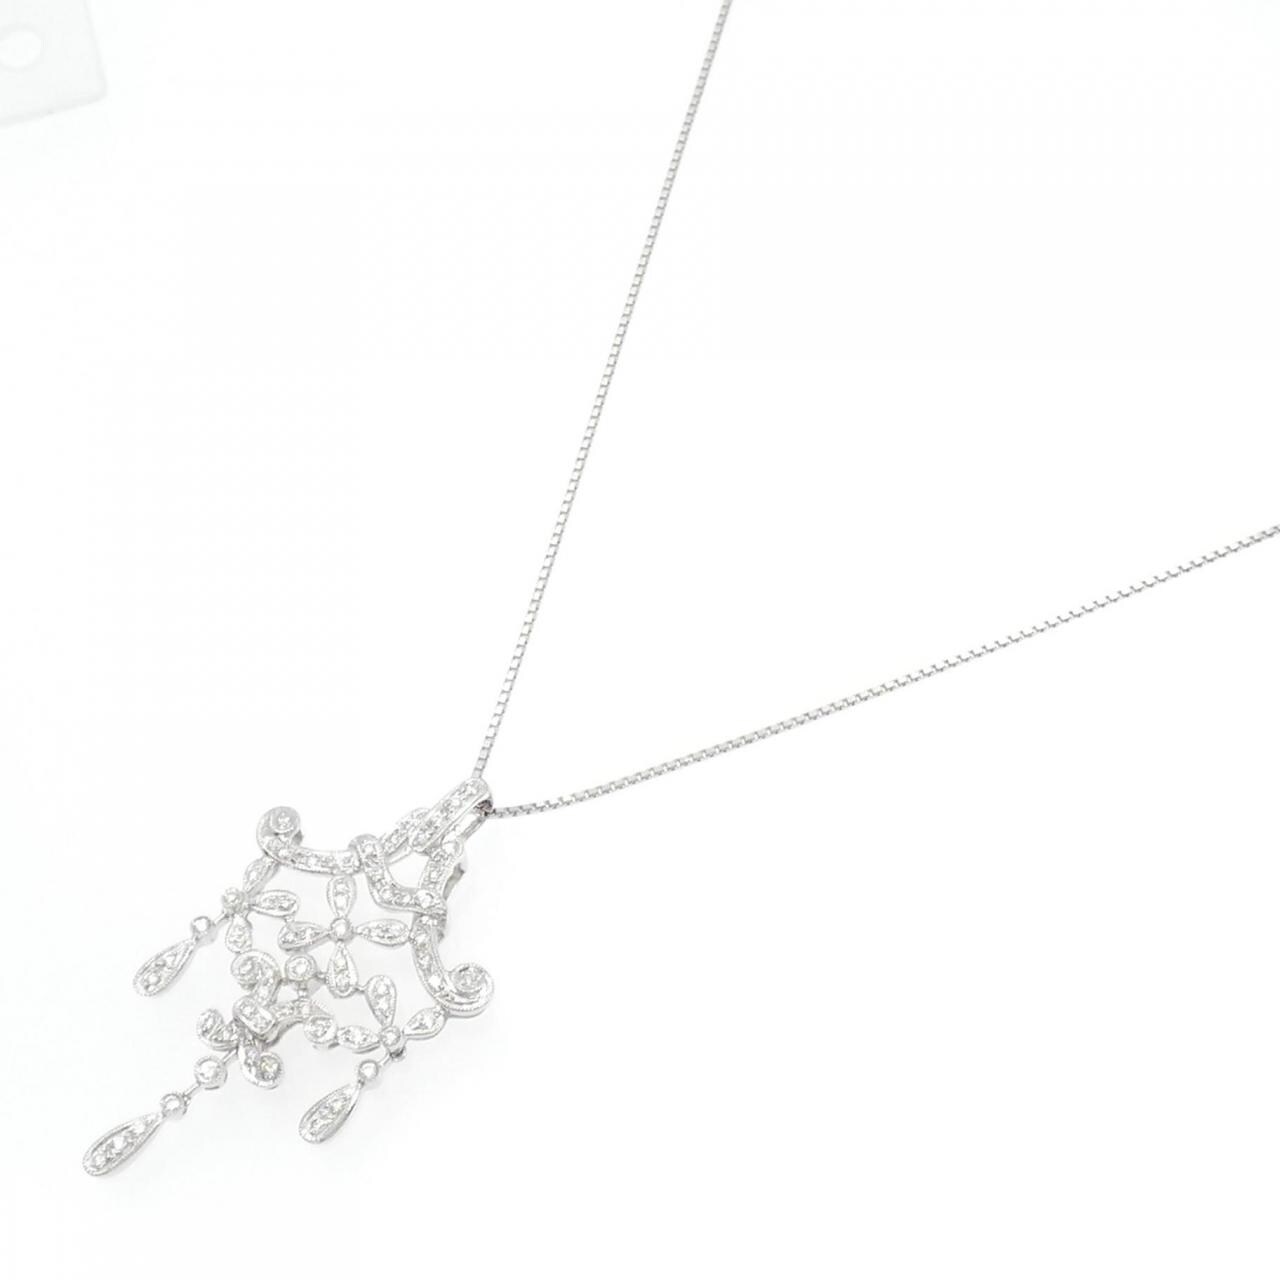 アクセサリー美品『USED』 K18WG/ダイヤモンド  ネックレス ダイヤモンド 1.00ct 12.3g